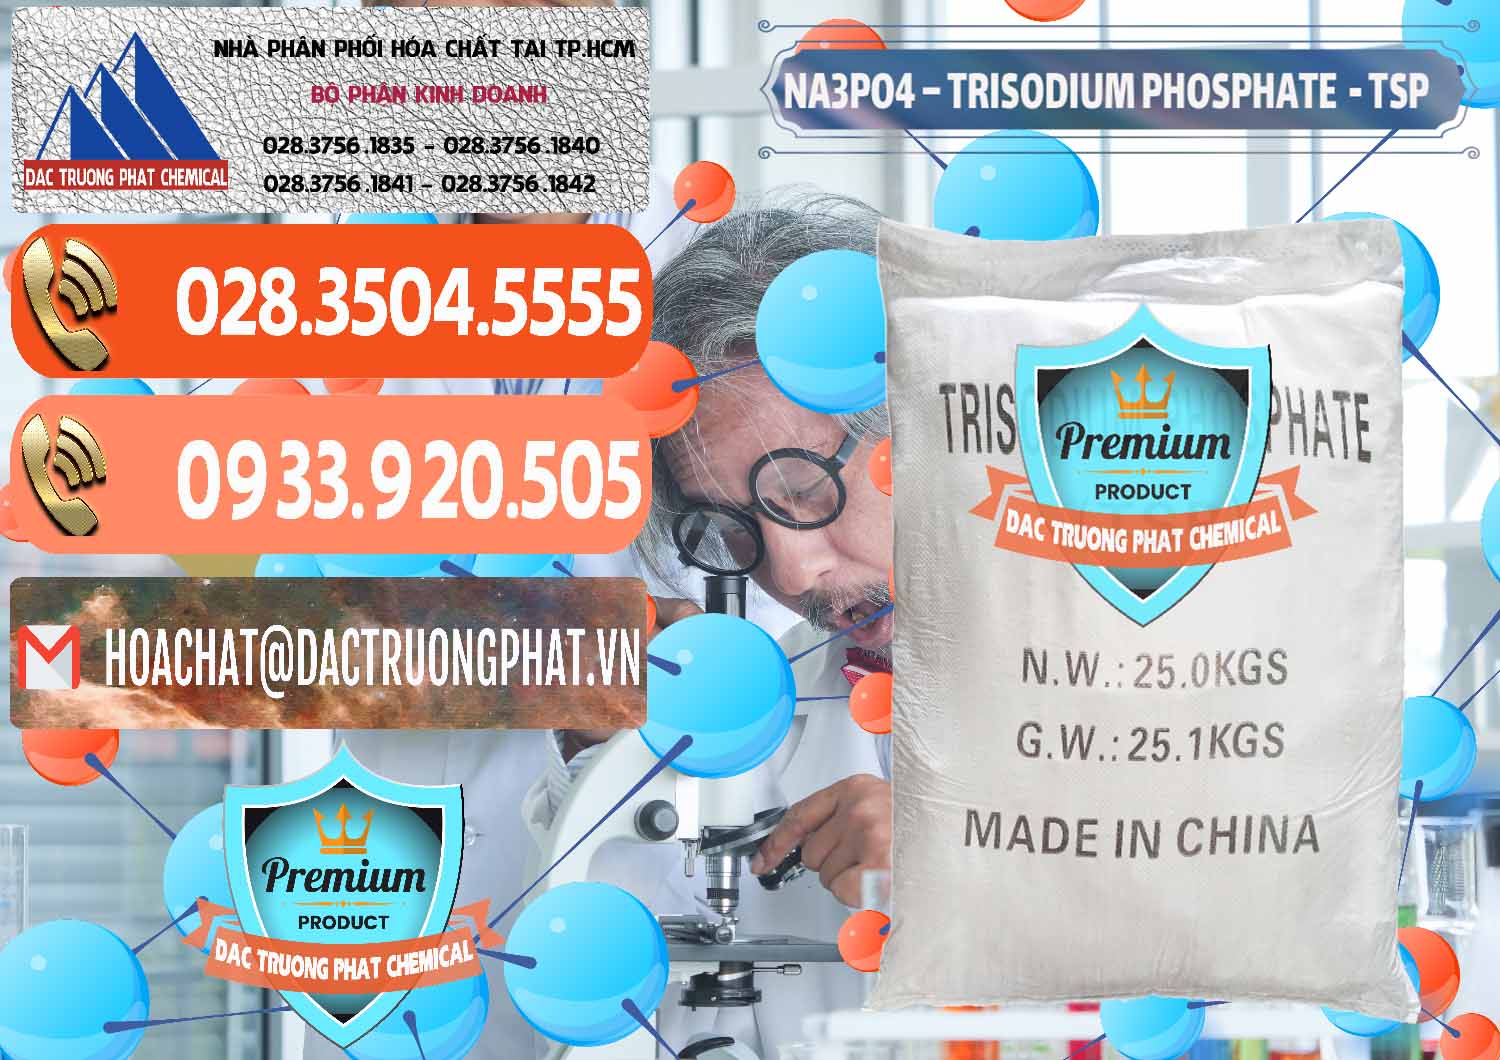 Đơn vị chuyên kinh doanh và bán Na3PO4 – Trisodium Phosphate Trung Quốc China TSP - 0103 - Công ty cung cấp - phân phối hóa chất tại TP.HCM - hoachatmientay.com